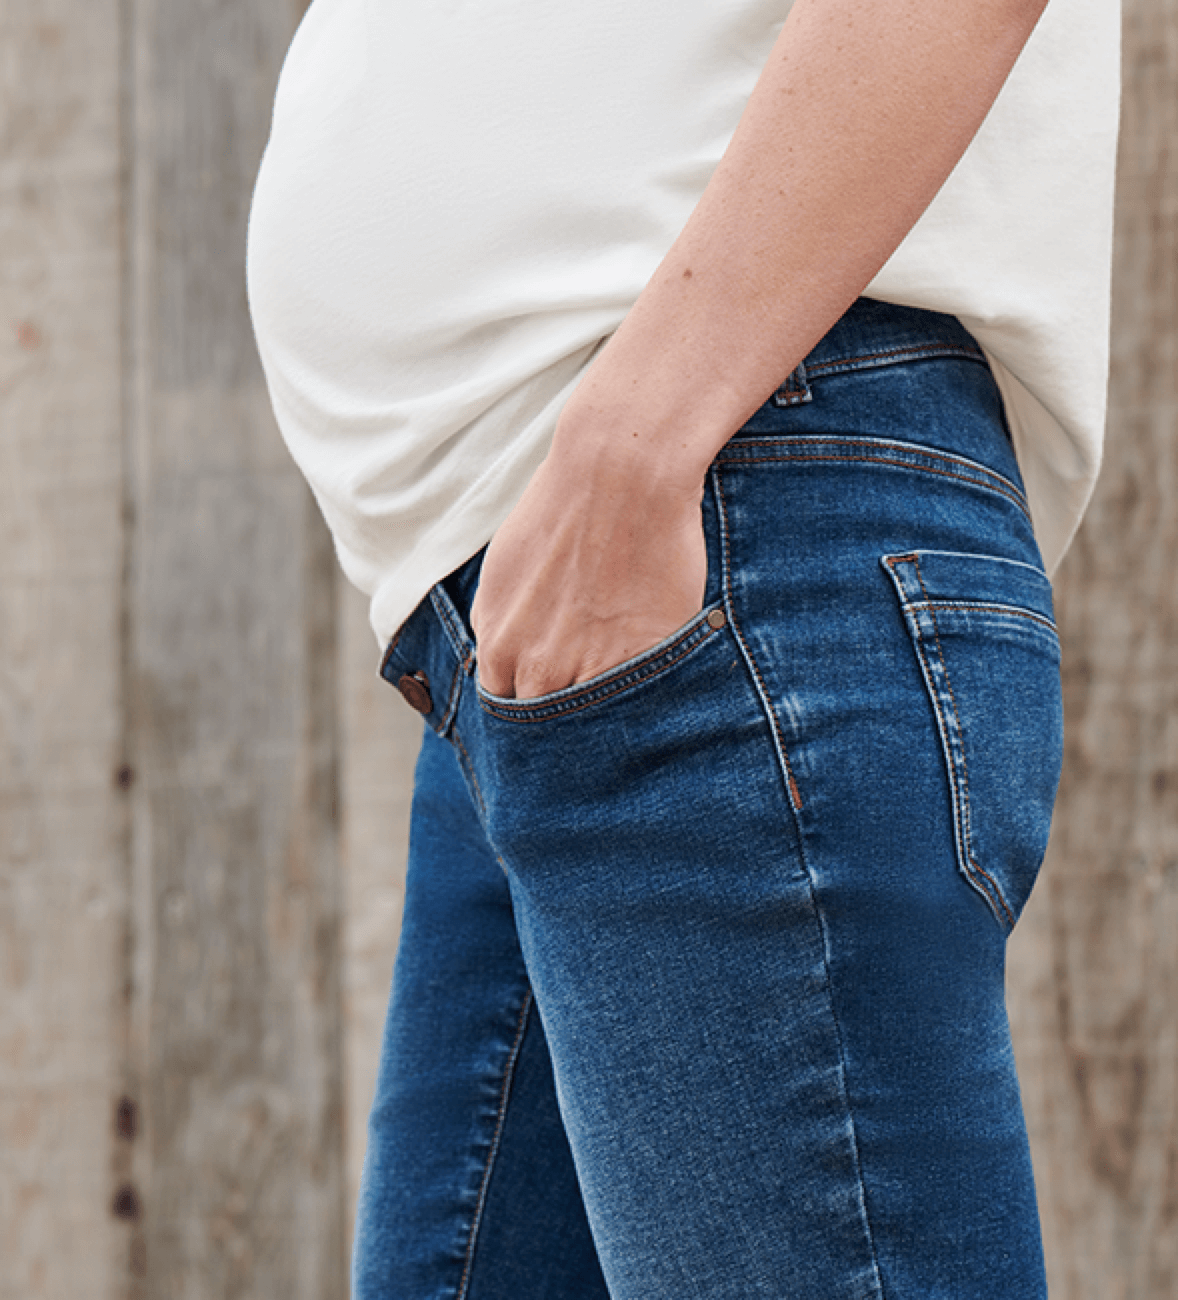 Cuándo usar una faja premamá en el embarazo? · El Corte Inglés